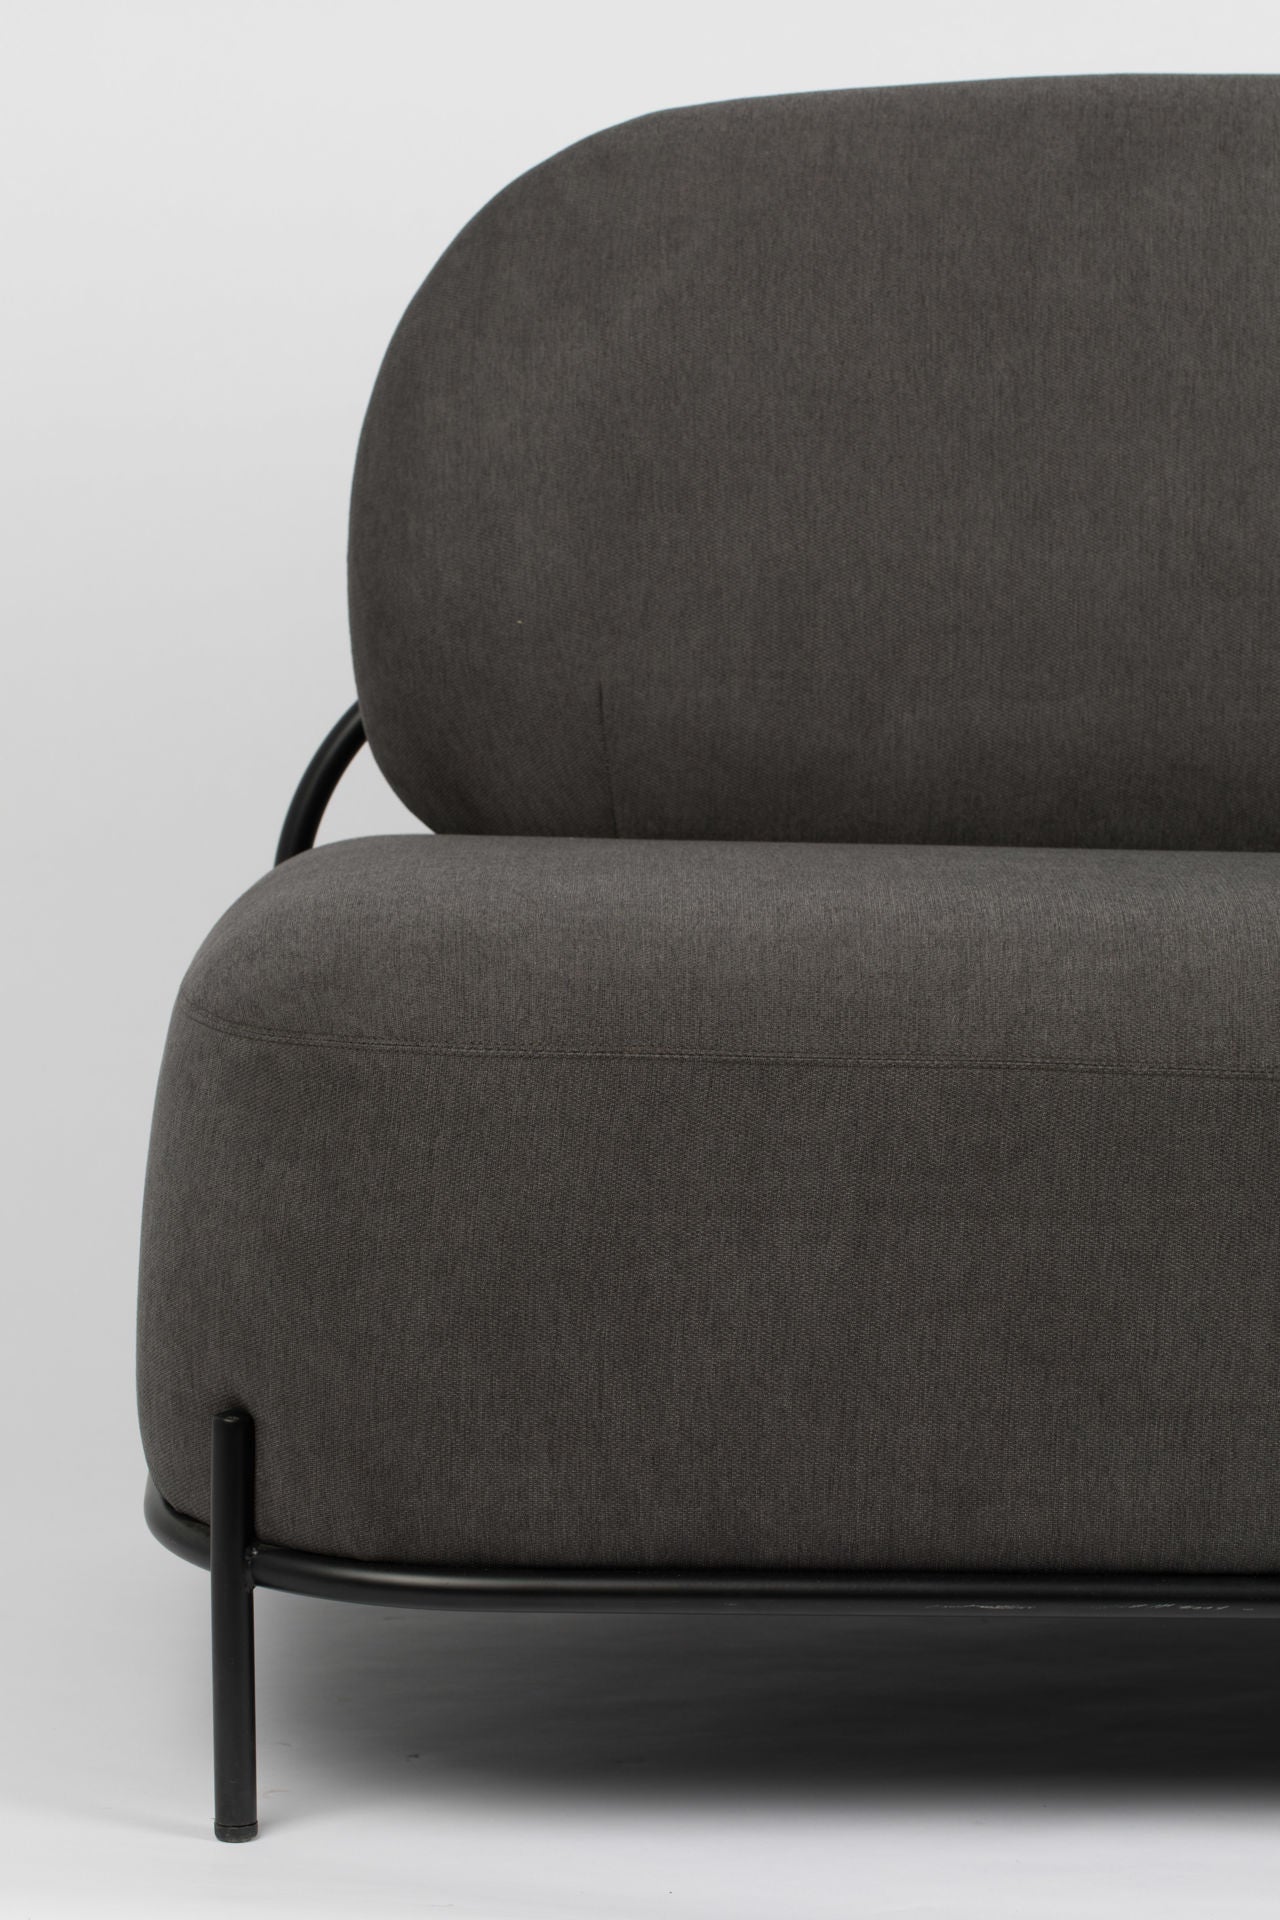 Nancy's Scottdale Lounge Chair - Industriel - Gris - Polyester, Contreplaqué, Fer - 71,5 cm x 125 cm x 77 cm